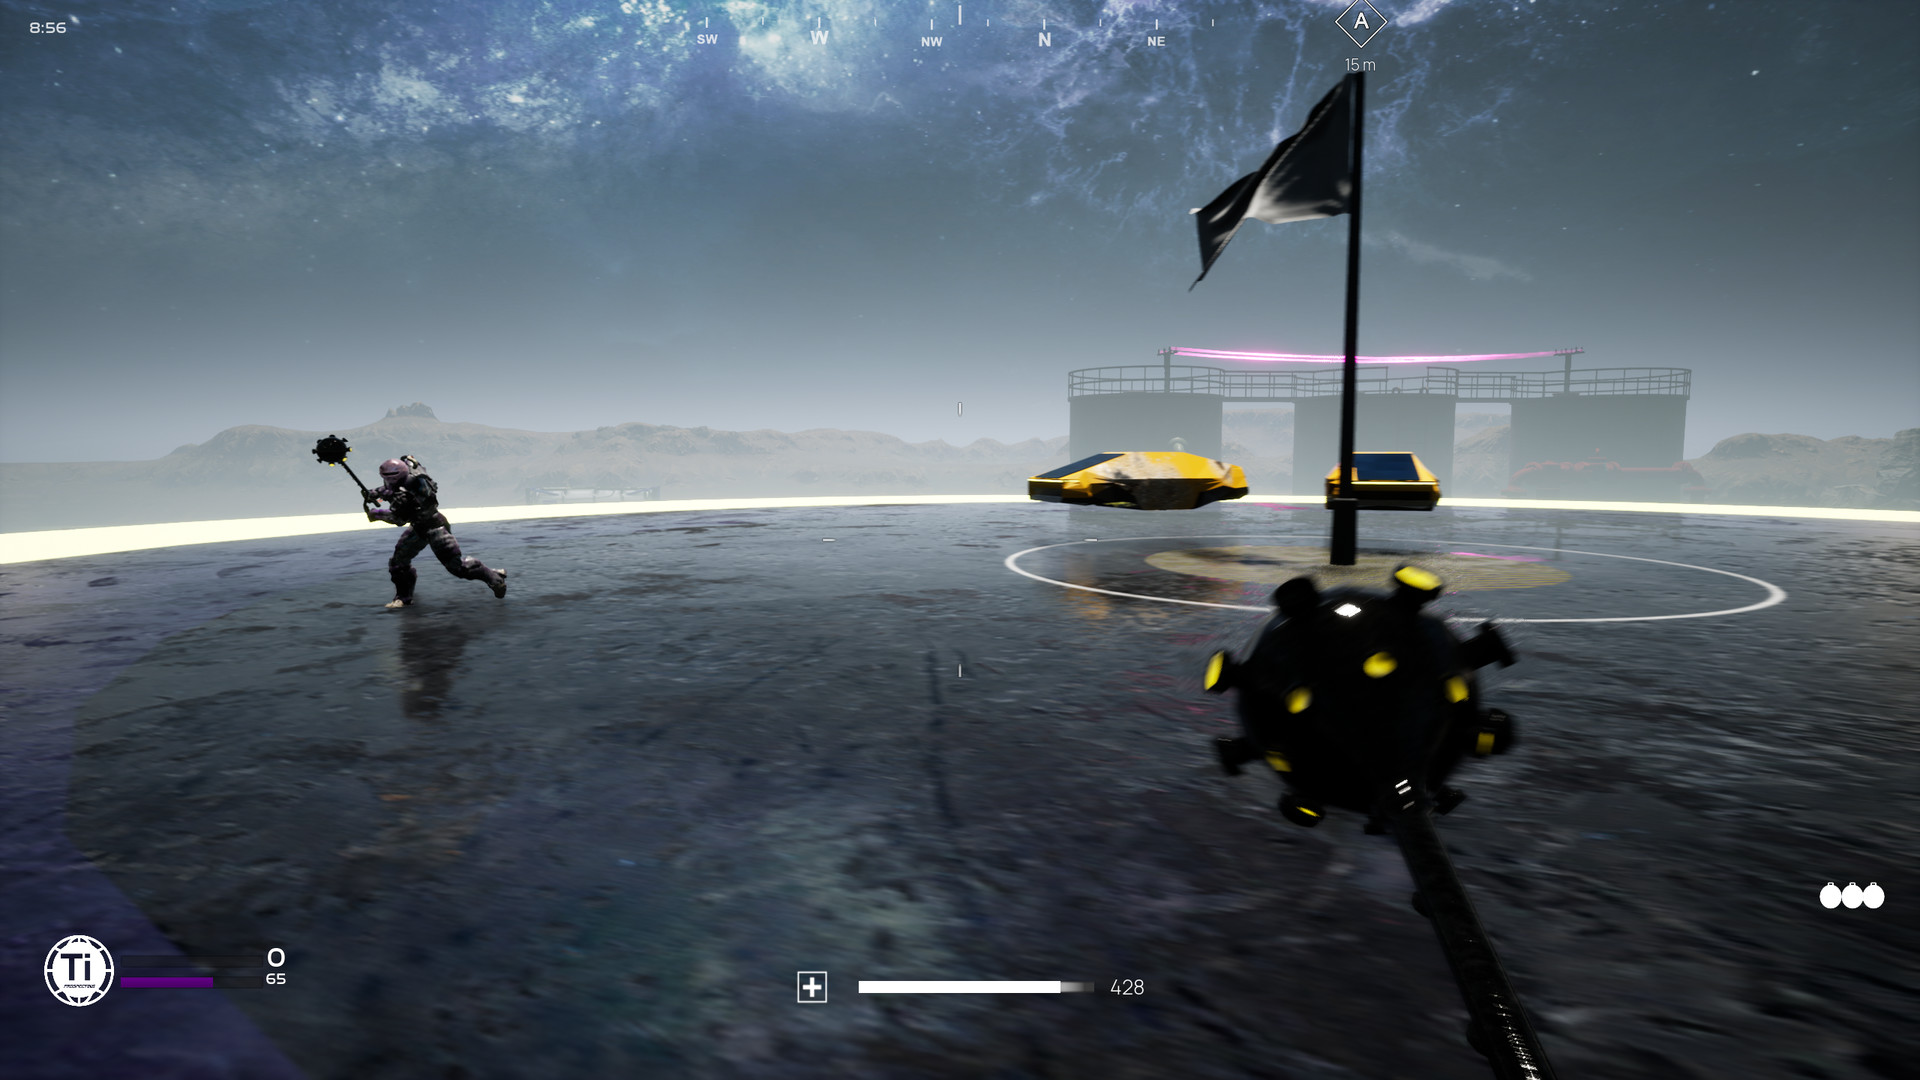 Gravity lança seu novo jogo de plataforma 3D, 'ALTF42' na versão de acesso  antecipado do Steam